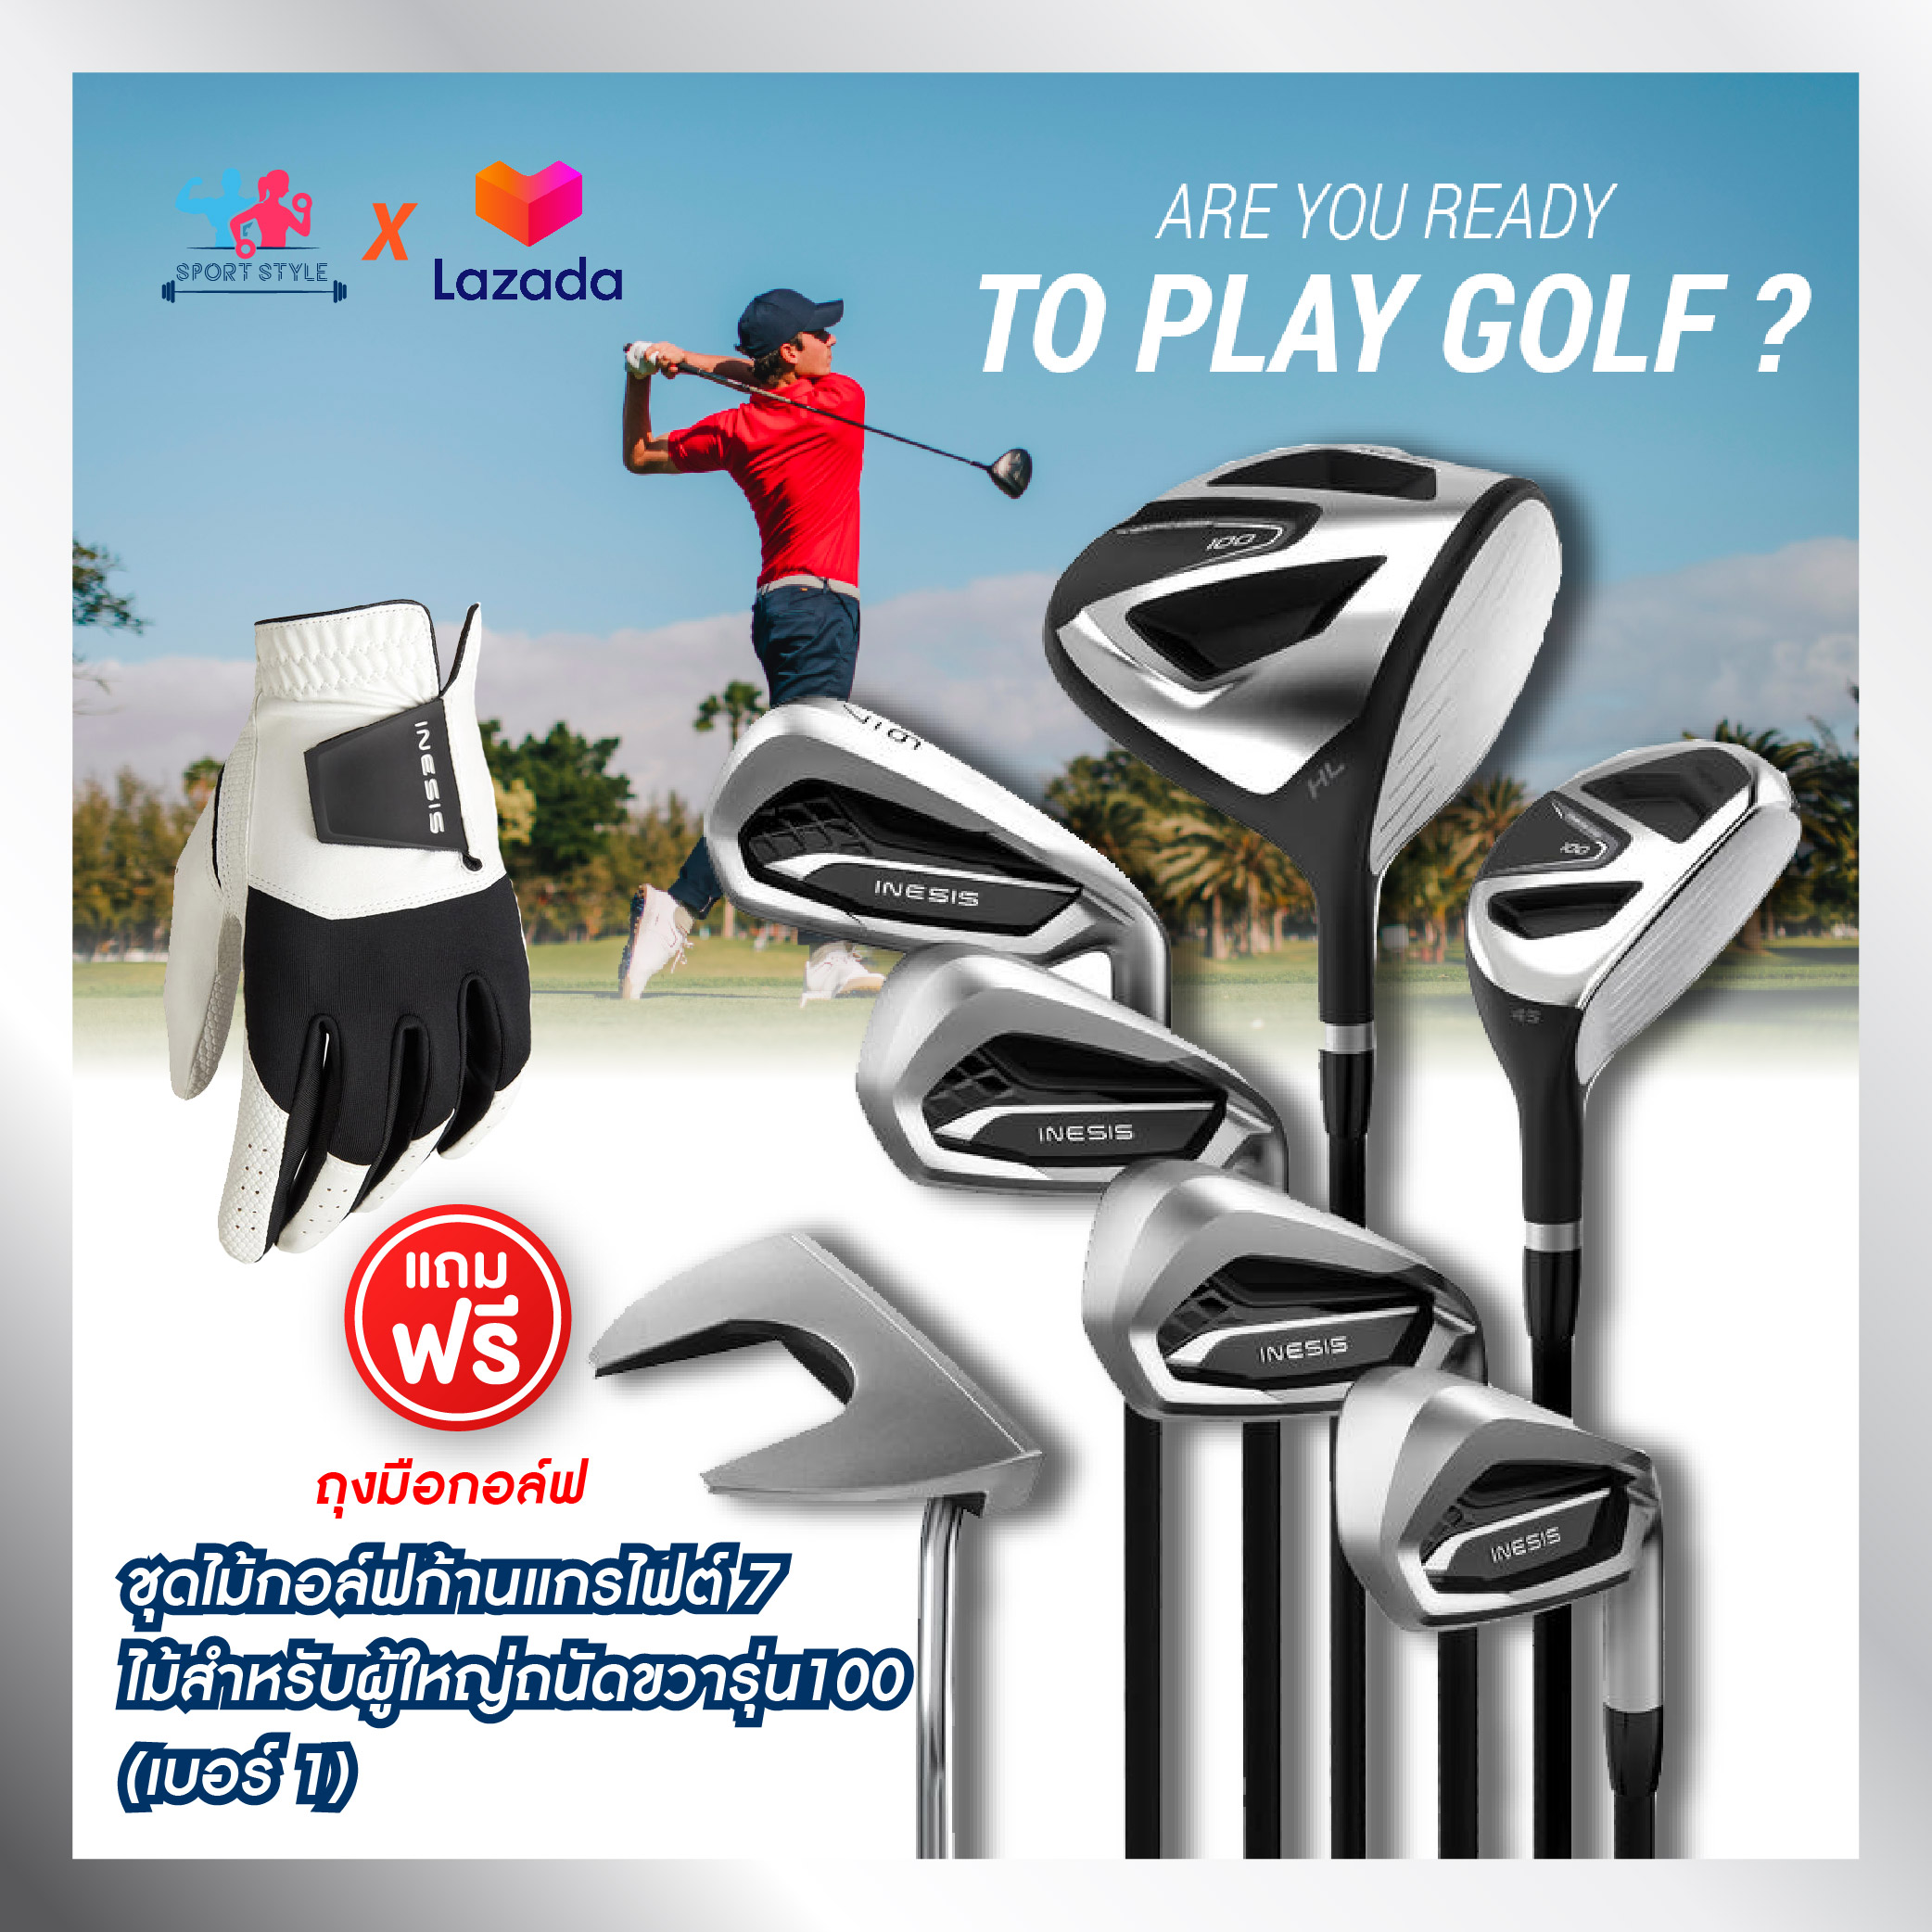 INESIS ชุดไม้กอล์ฟก้านแกรไฟต์ 7 ไม้สำหรับผู้ใหญ่ถนัดขวารุ่น 100 (เบอร์ 1) กอล์ฟ ไม้กอล์ฟ golf